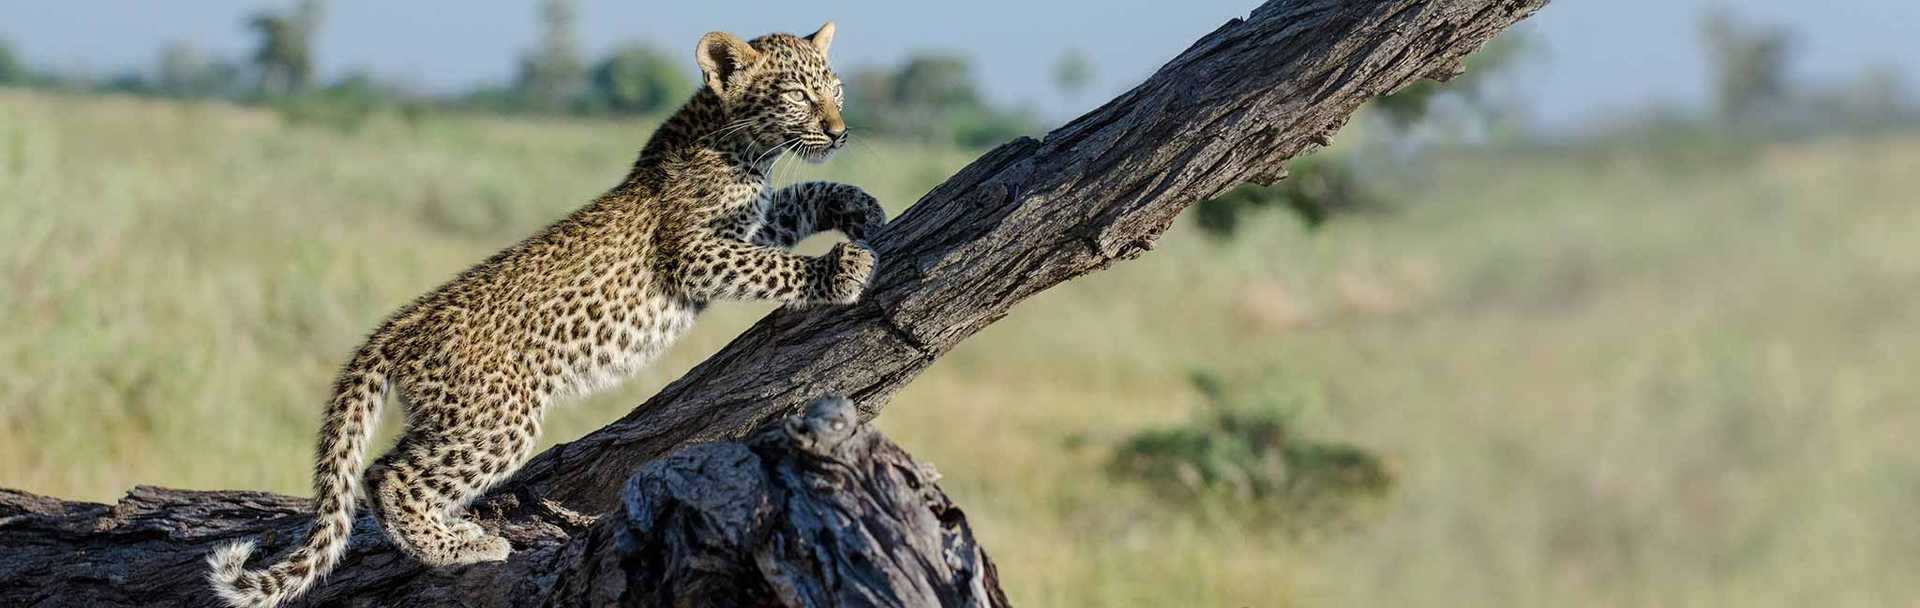 Kenya safari - Leopard cub climbing tree